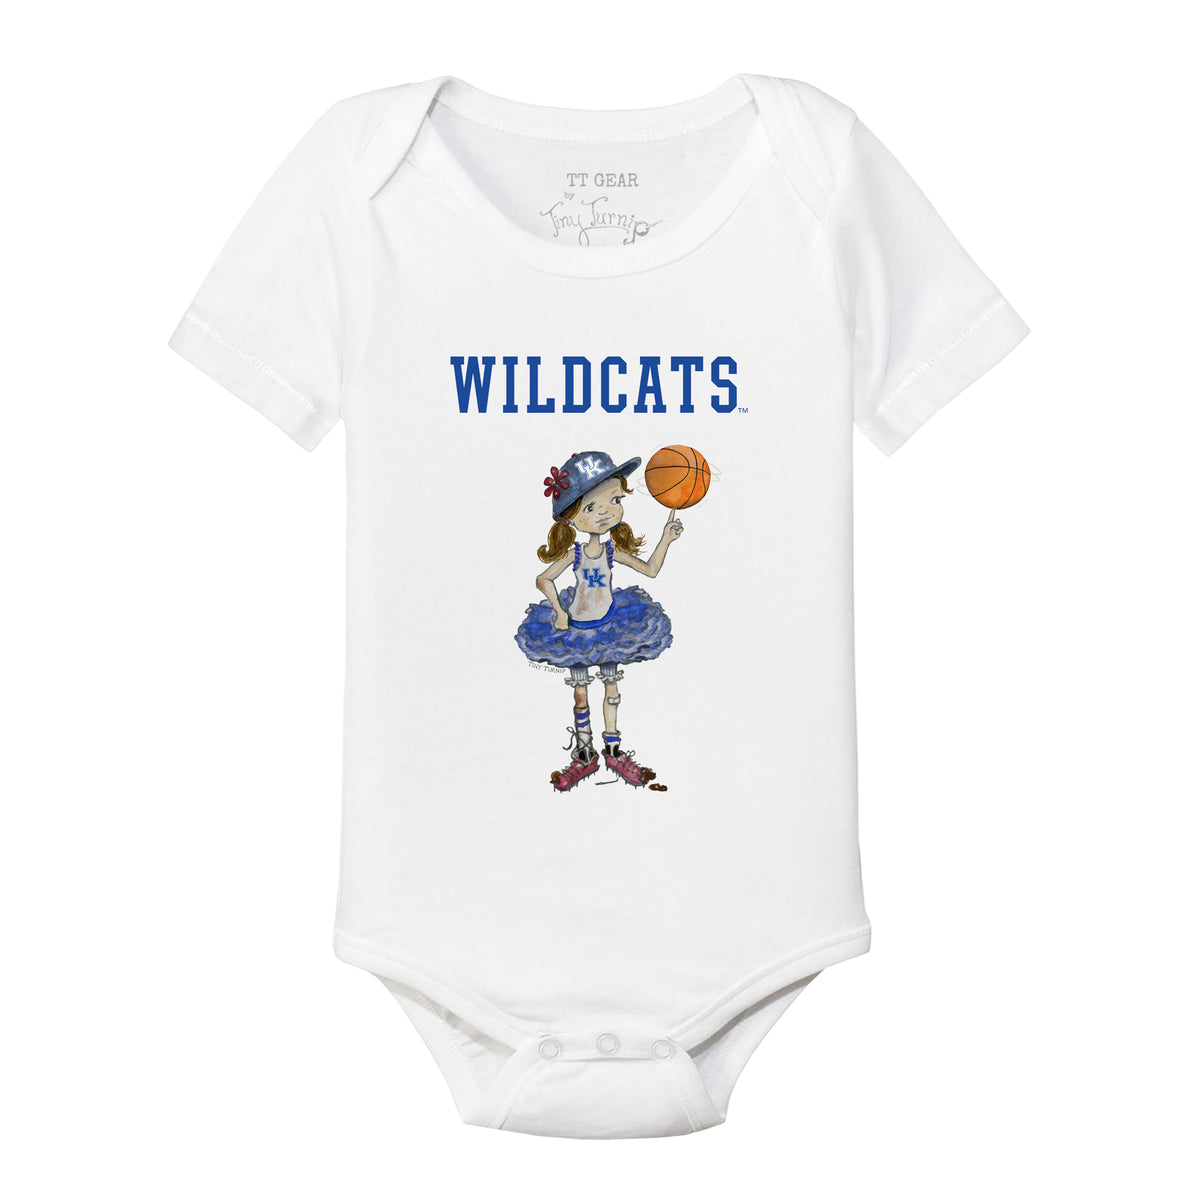 Kentucky Wildcats Babes Short Sleeve Snapper